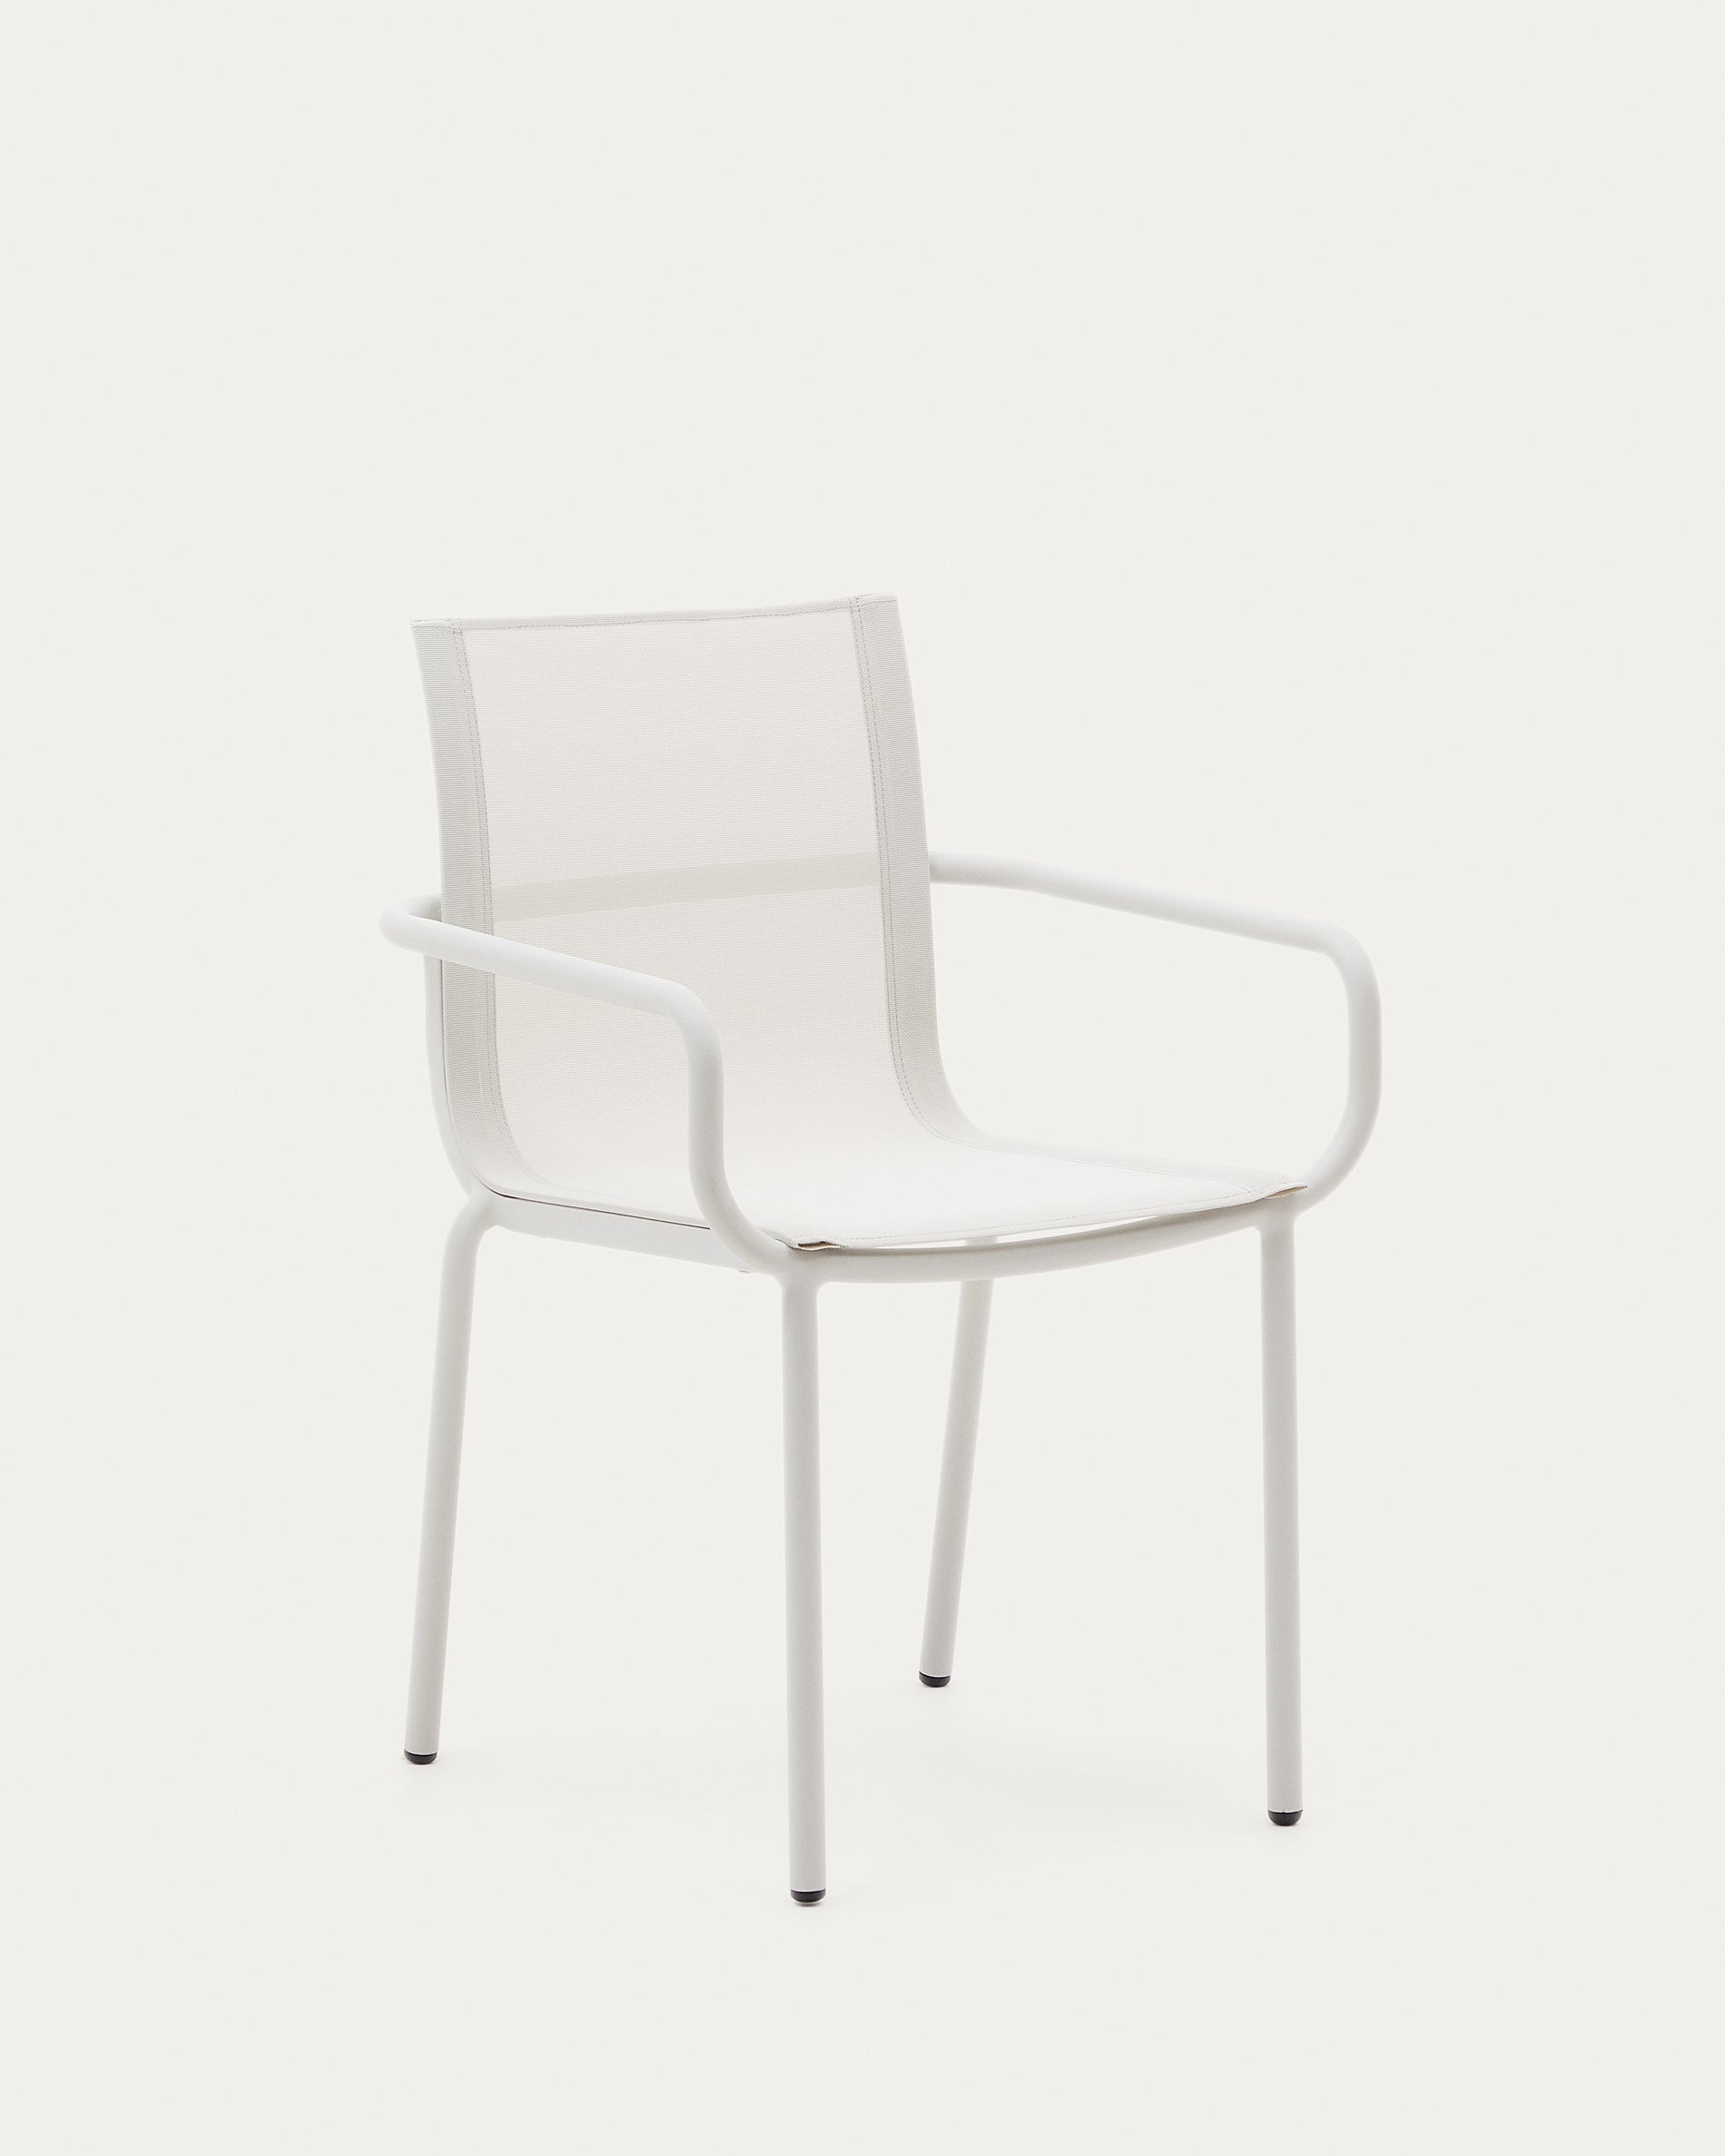 Galdana összecsukható kültéri szék alumíniumból, fehérre festett kivitelben